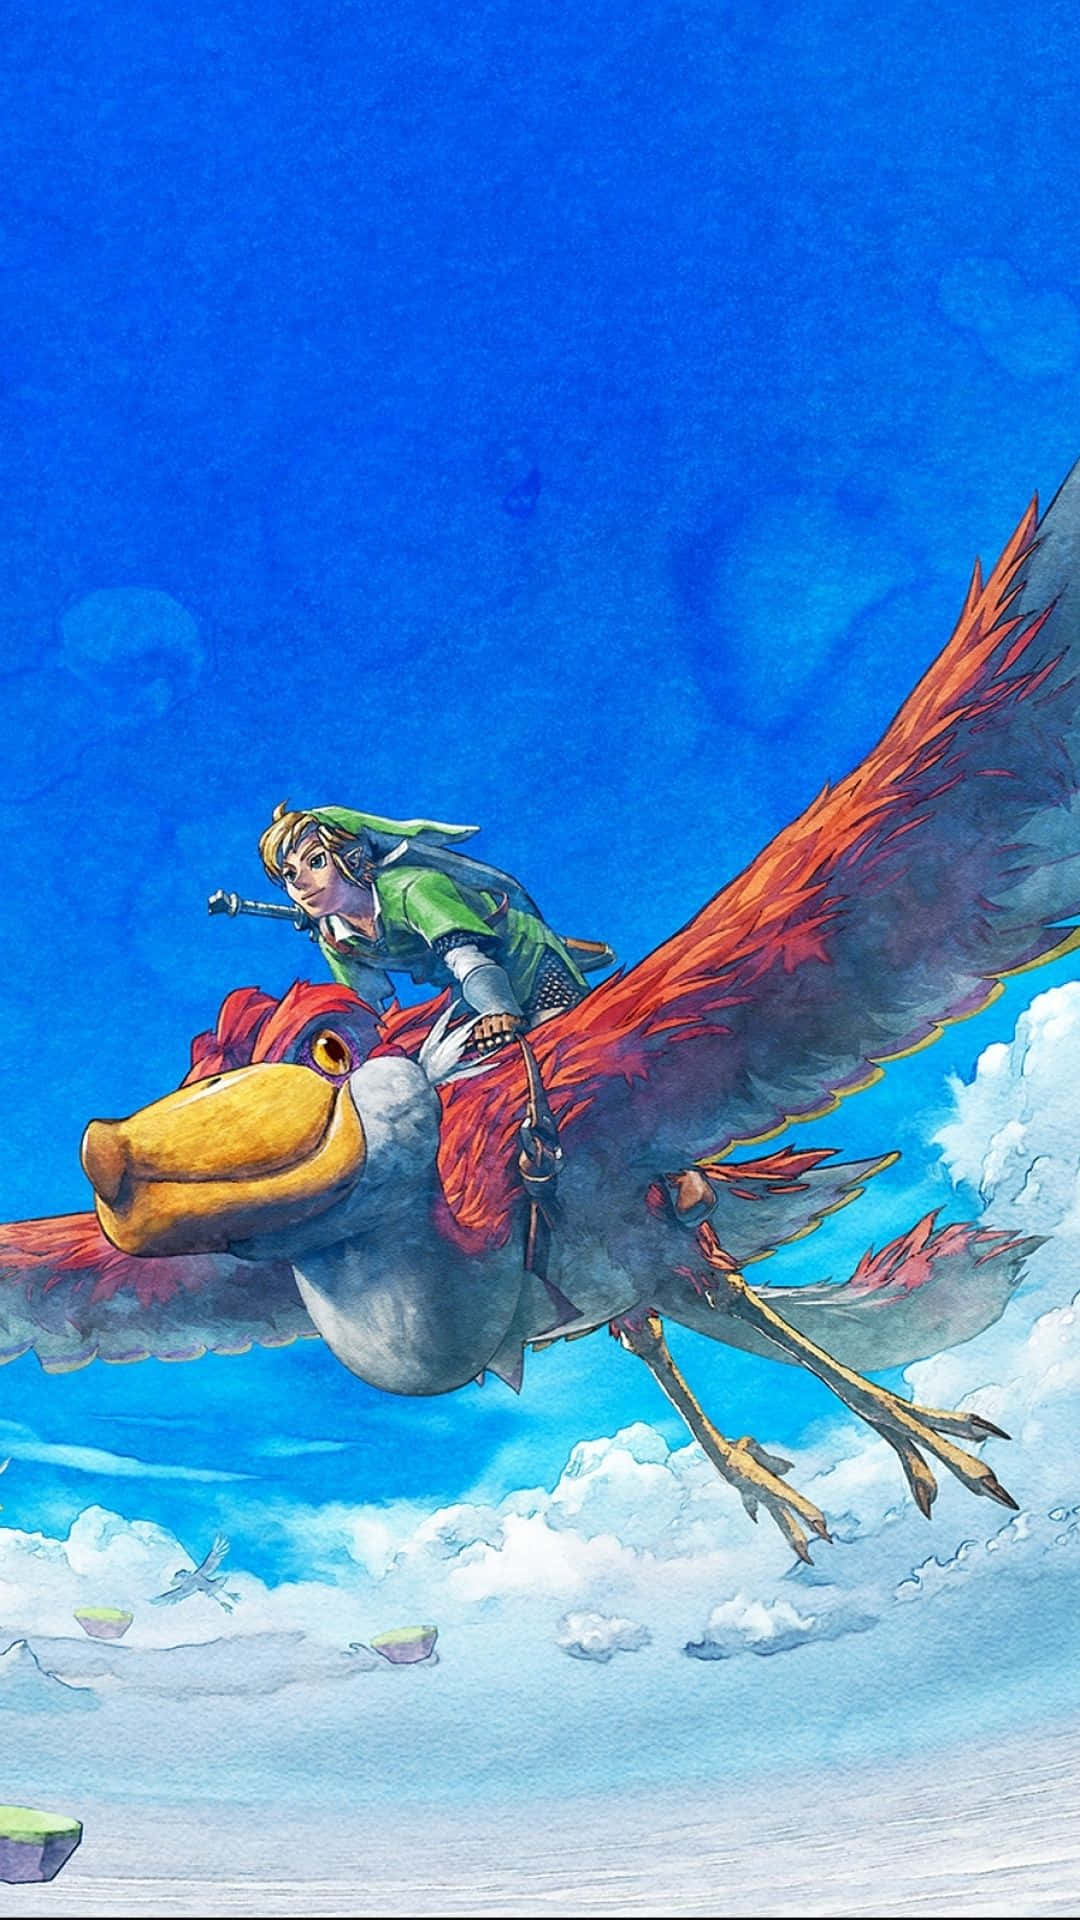 Åbn magiske eventyr med The Legend Of Zelda til iPhone. Wallpaper